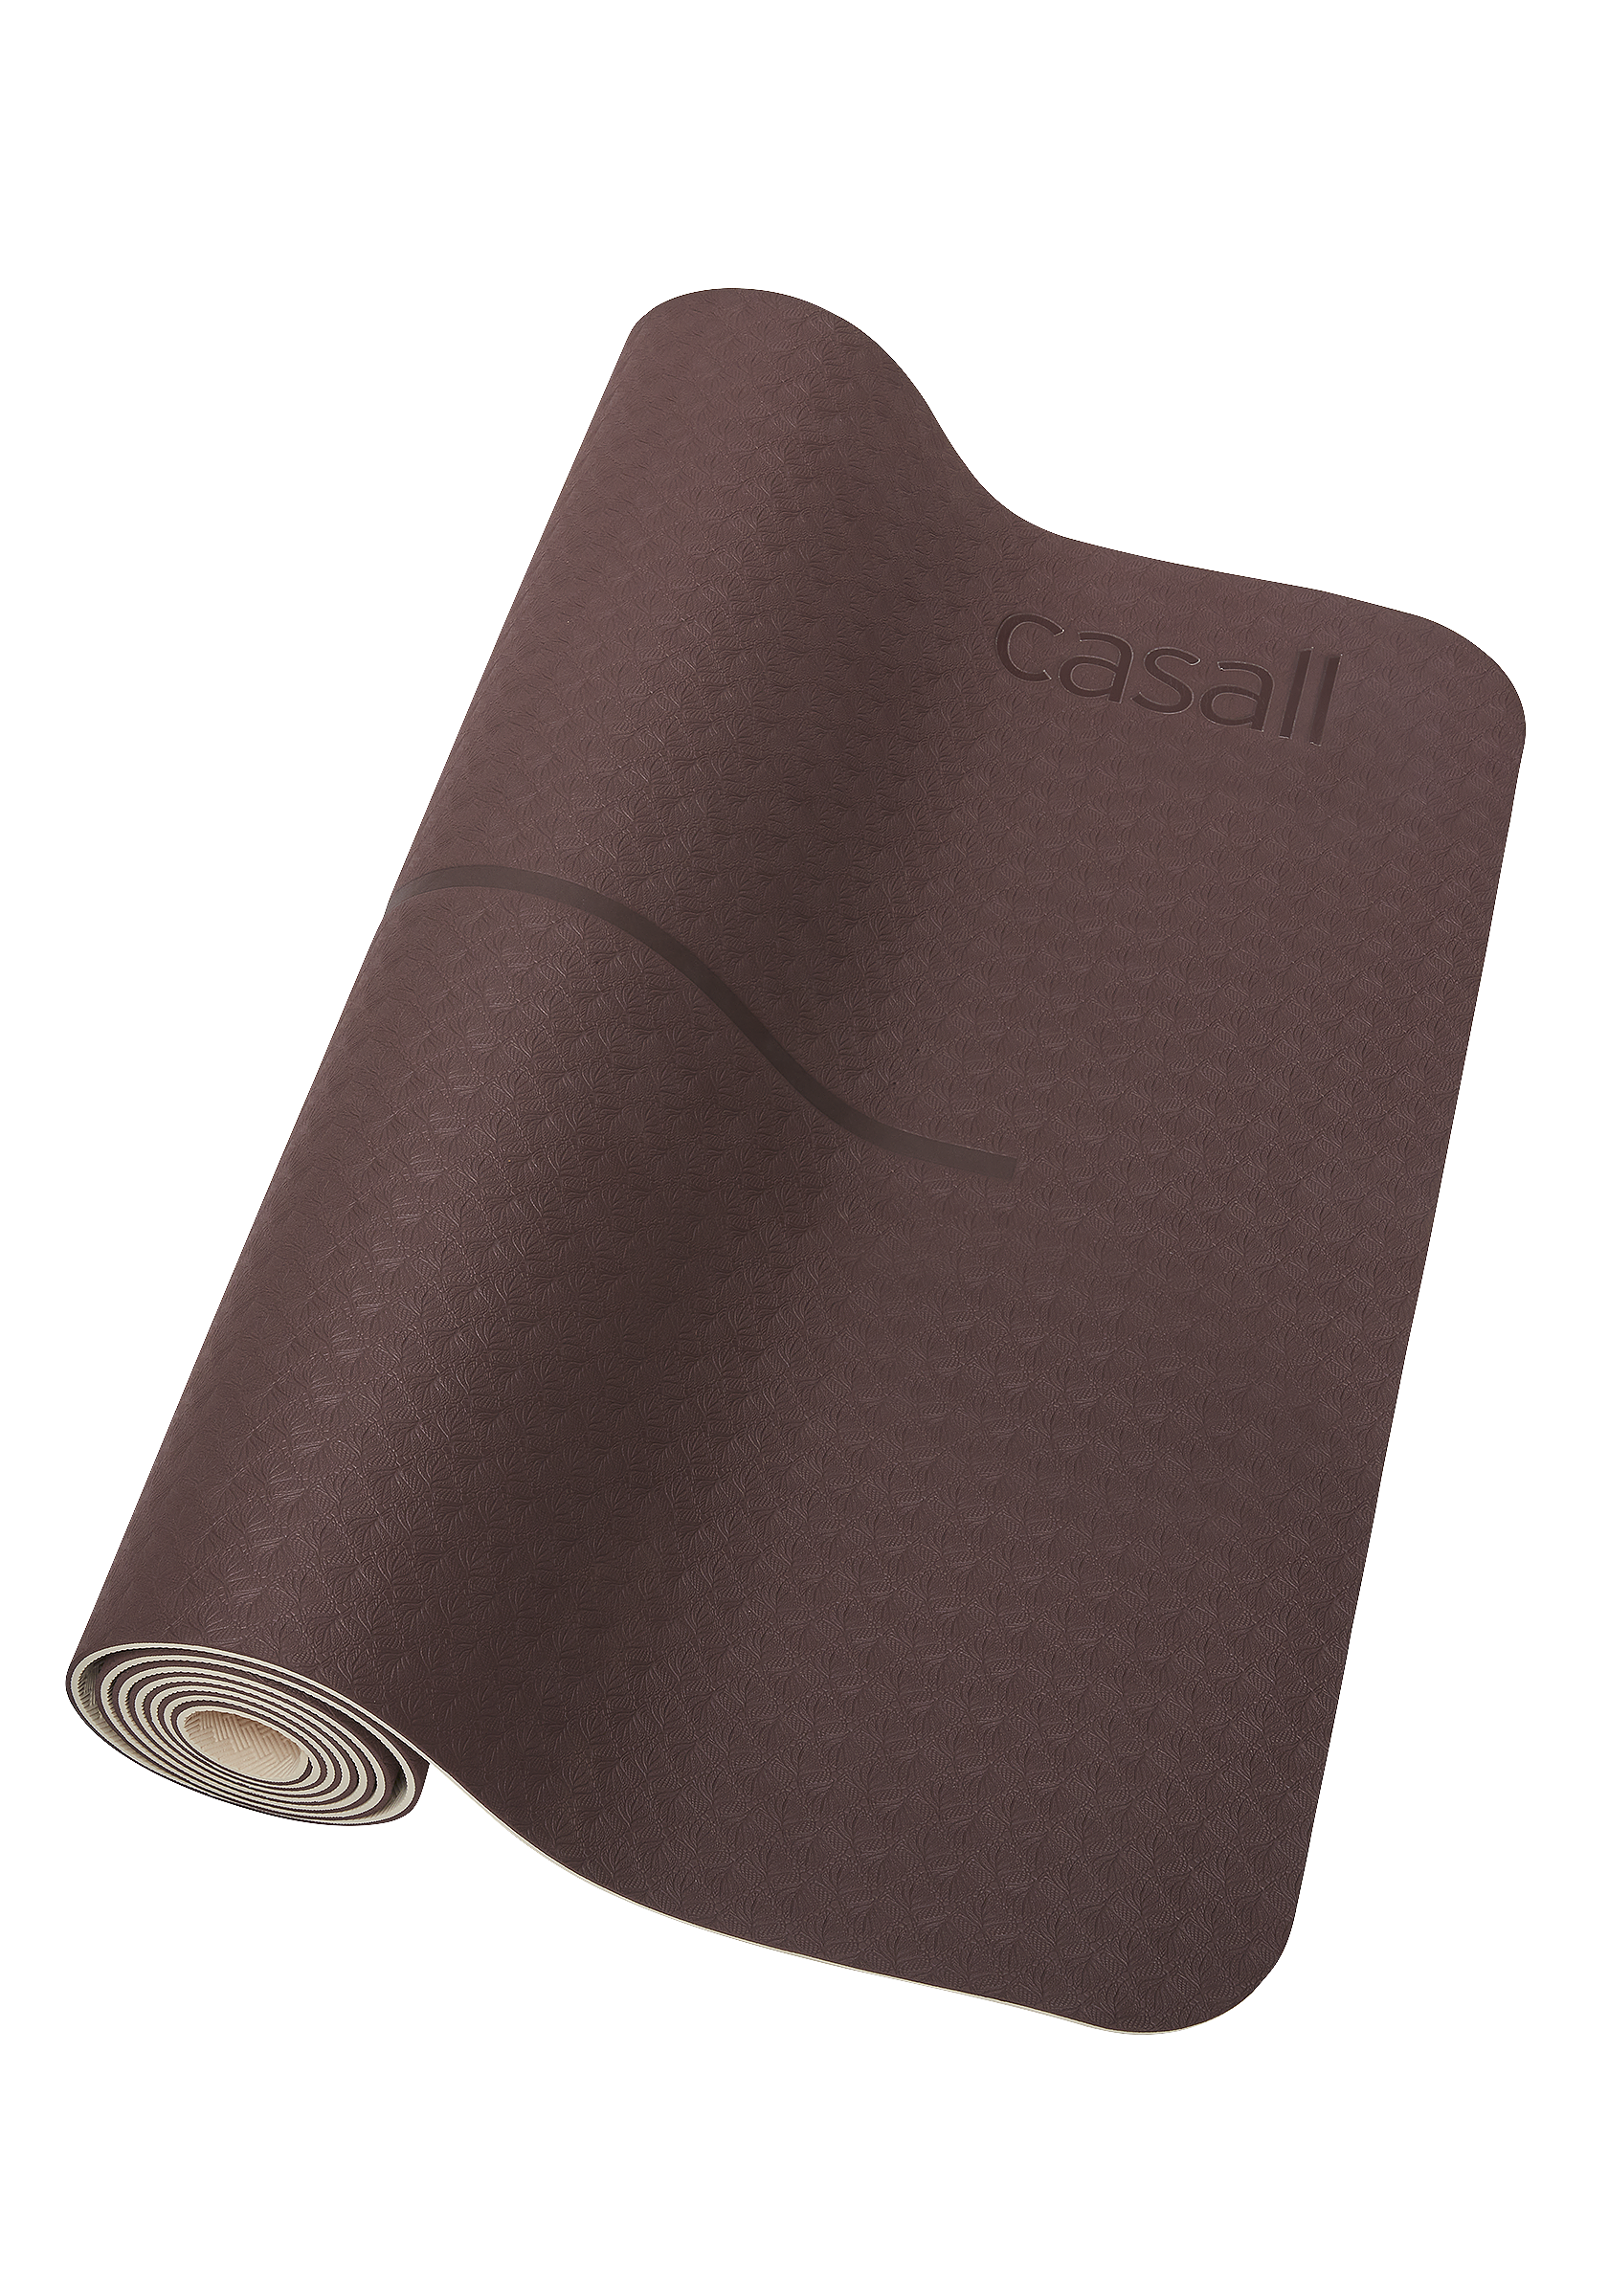 Casall YOGA MAT POSITION 4MM - Yoga mat - mahagony red/beige/bordeaux -  Zalando.de